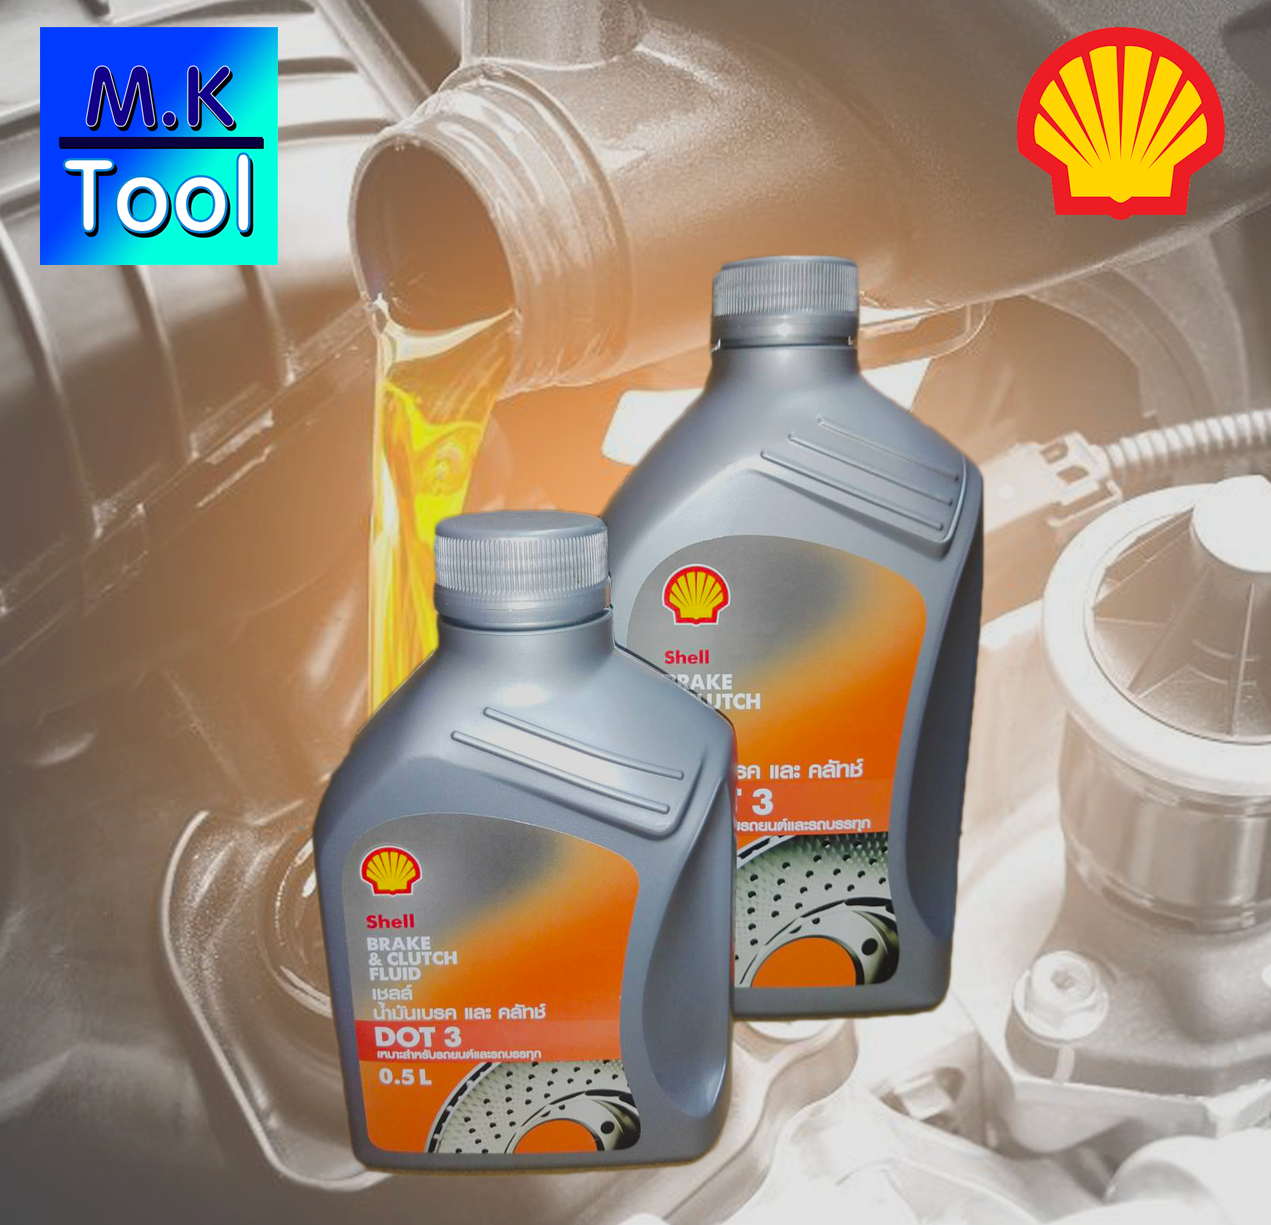 น้ำมันเบรค น้ำมันหล่อลื่น น้ำมันครัช เซลล์ Shell 0.5L/1L Brake & Clutch Fluid DOT 3 น้ำมัน เบรก /M.K Tool